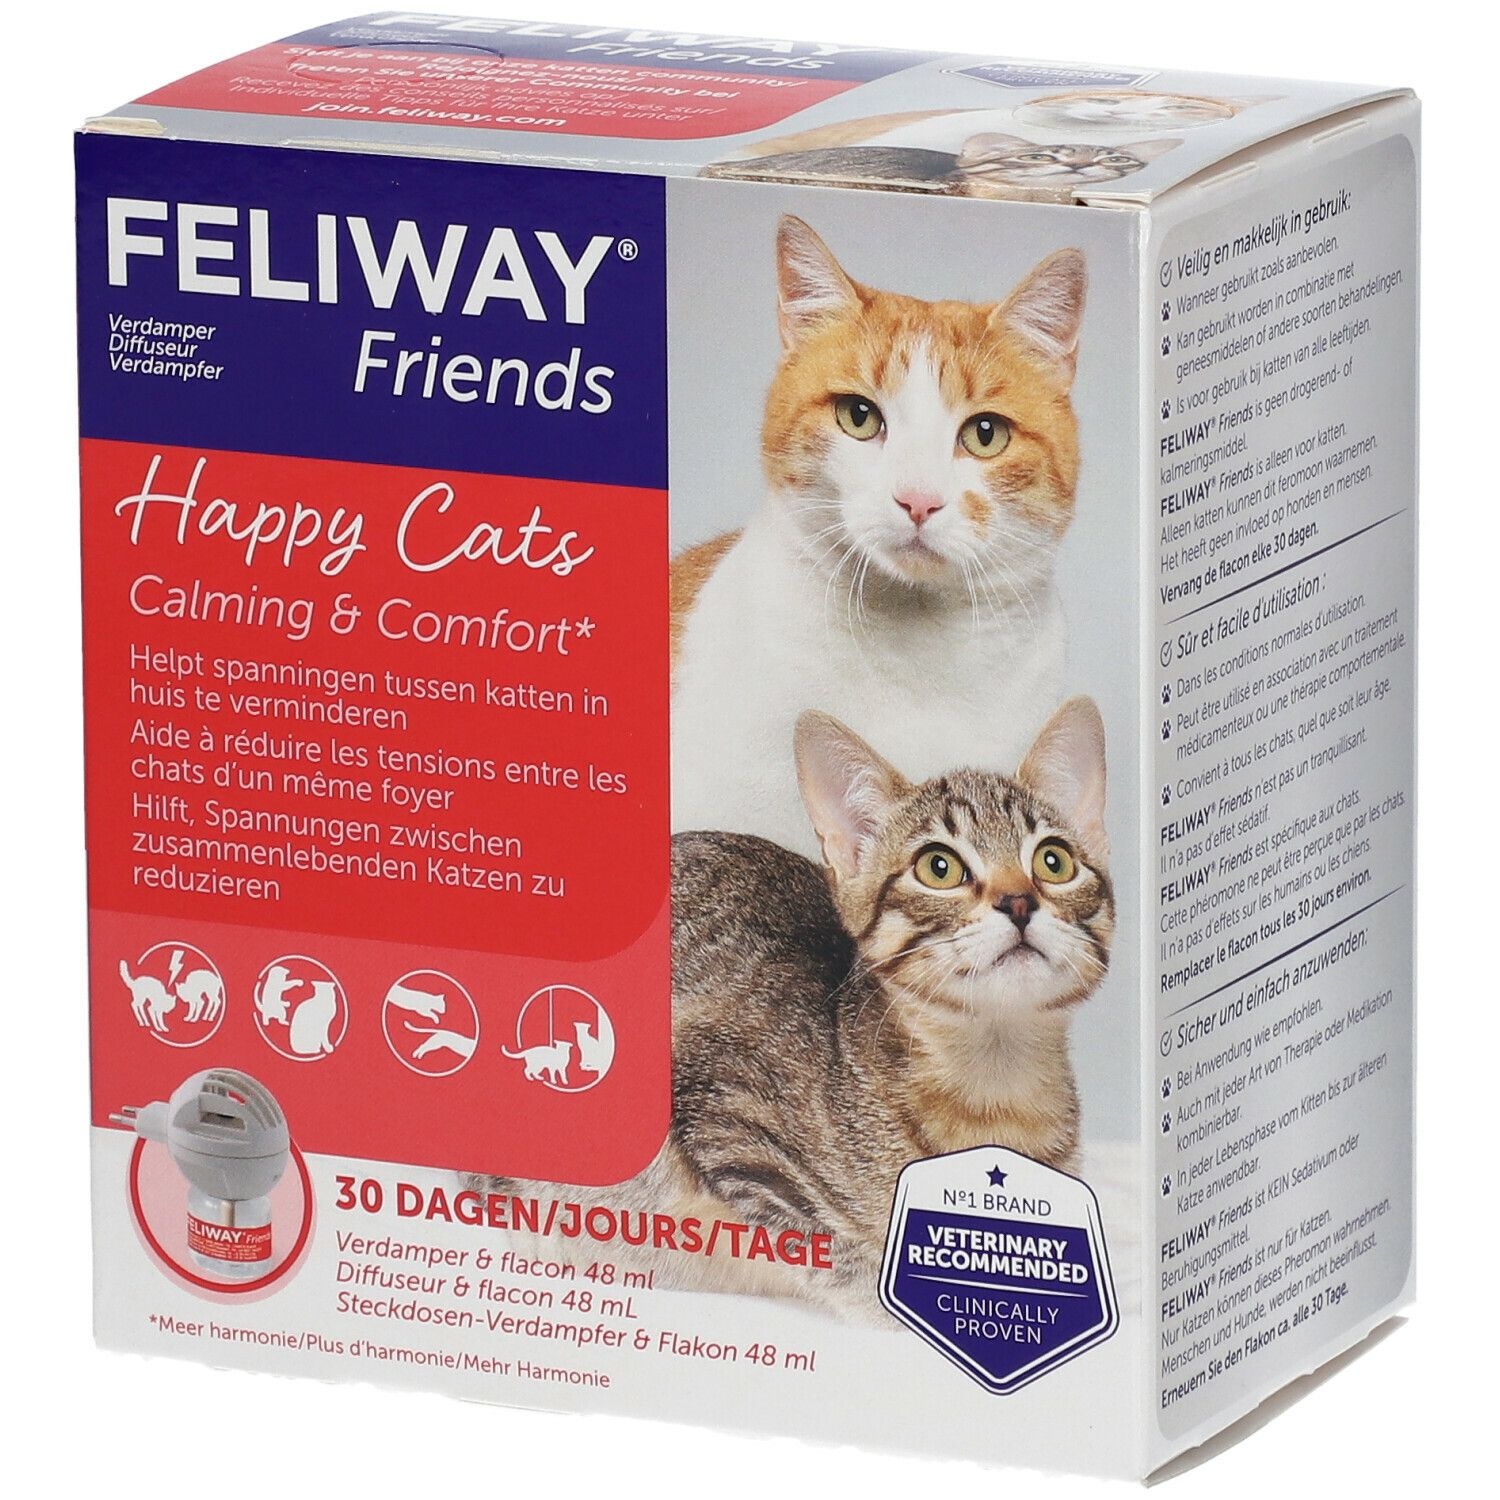 FELIWAY® Friends Kit de Démarrage Chats Heureux 1 pc(s) emballage(s) combi